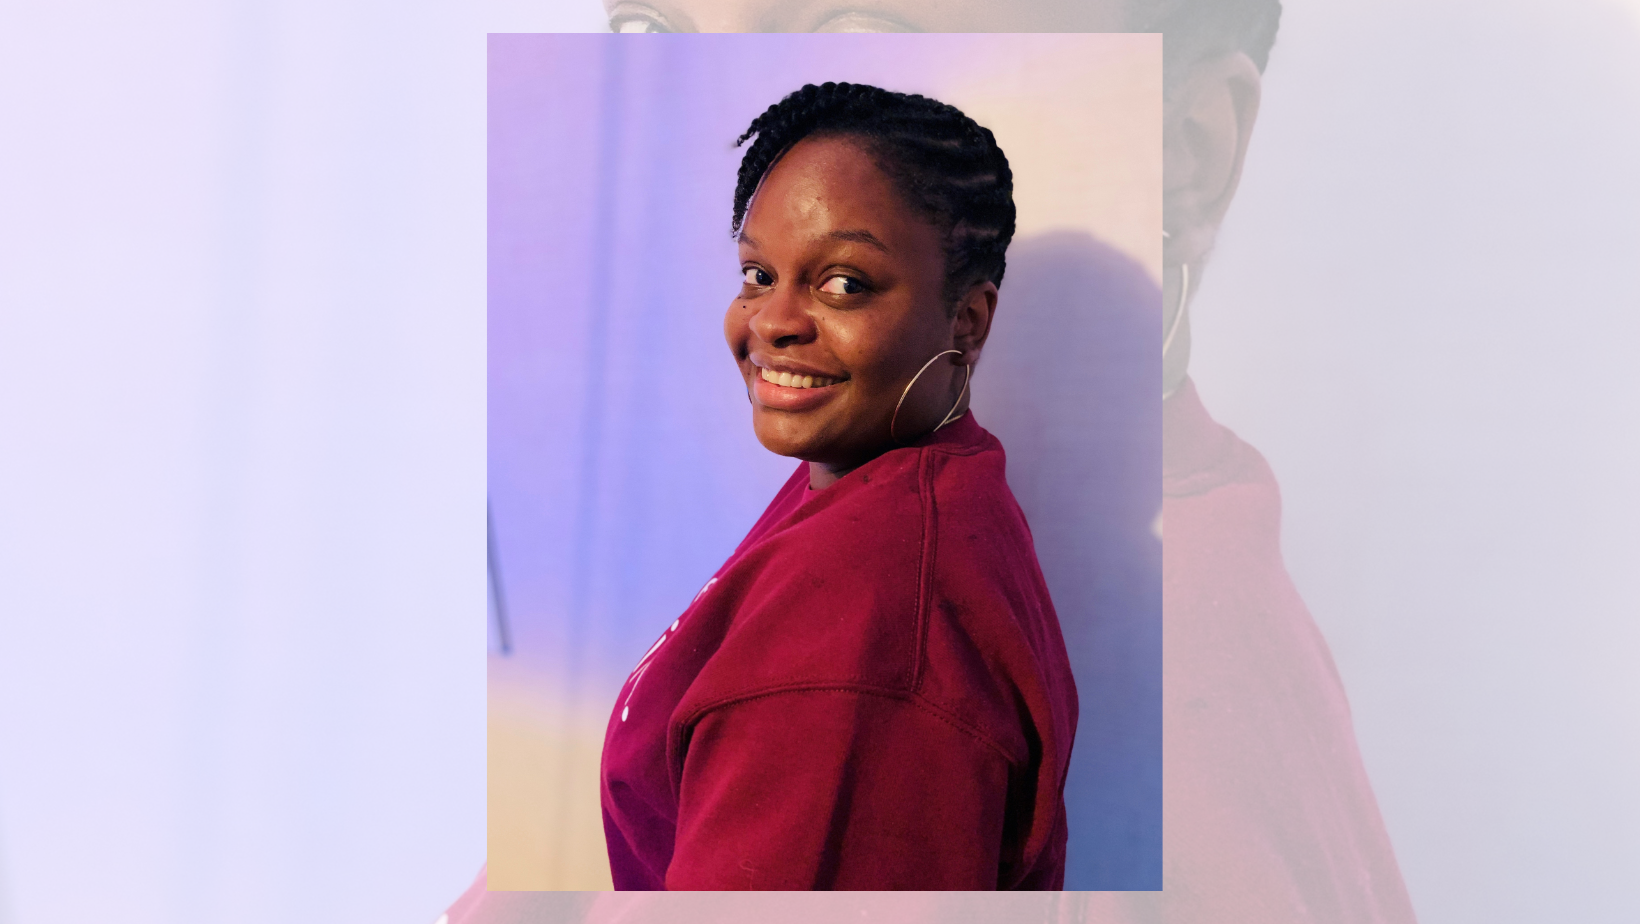     OUT d’or : la journaliste guadeloupéenne Sélène Agapé nommée dans la catégorie enquête et reportage

